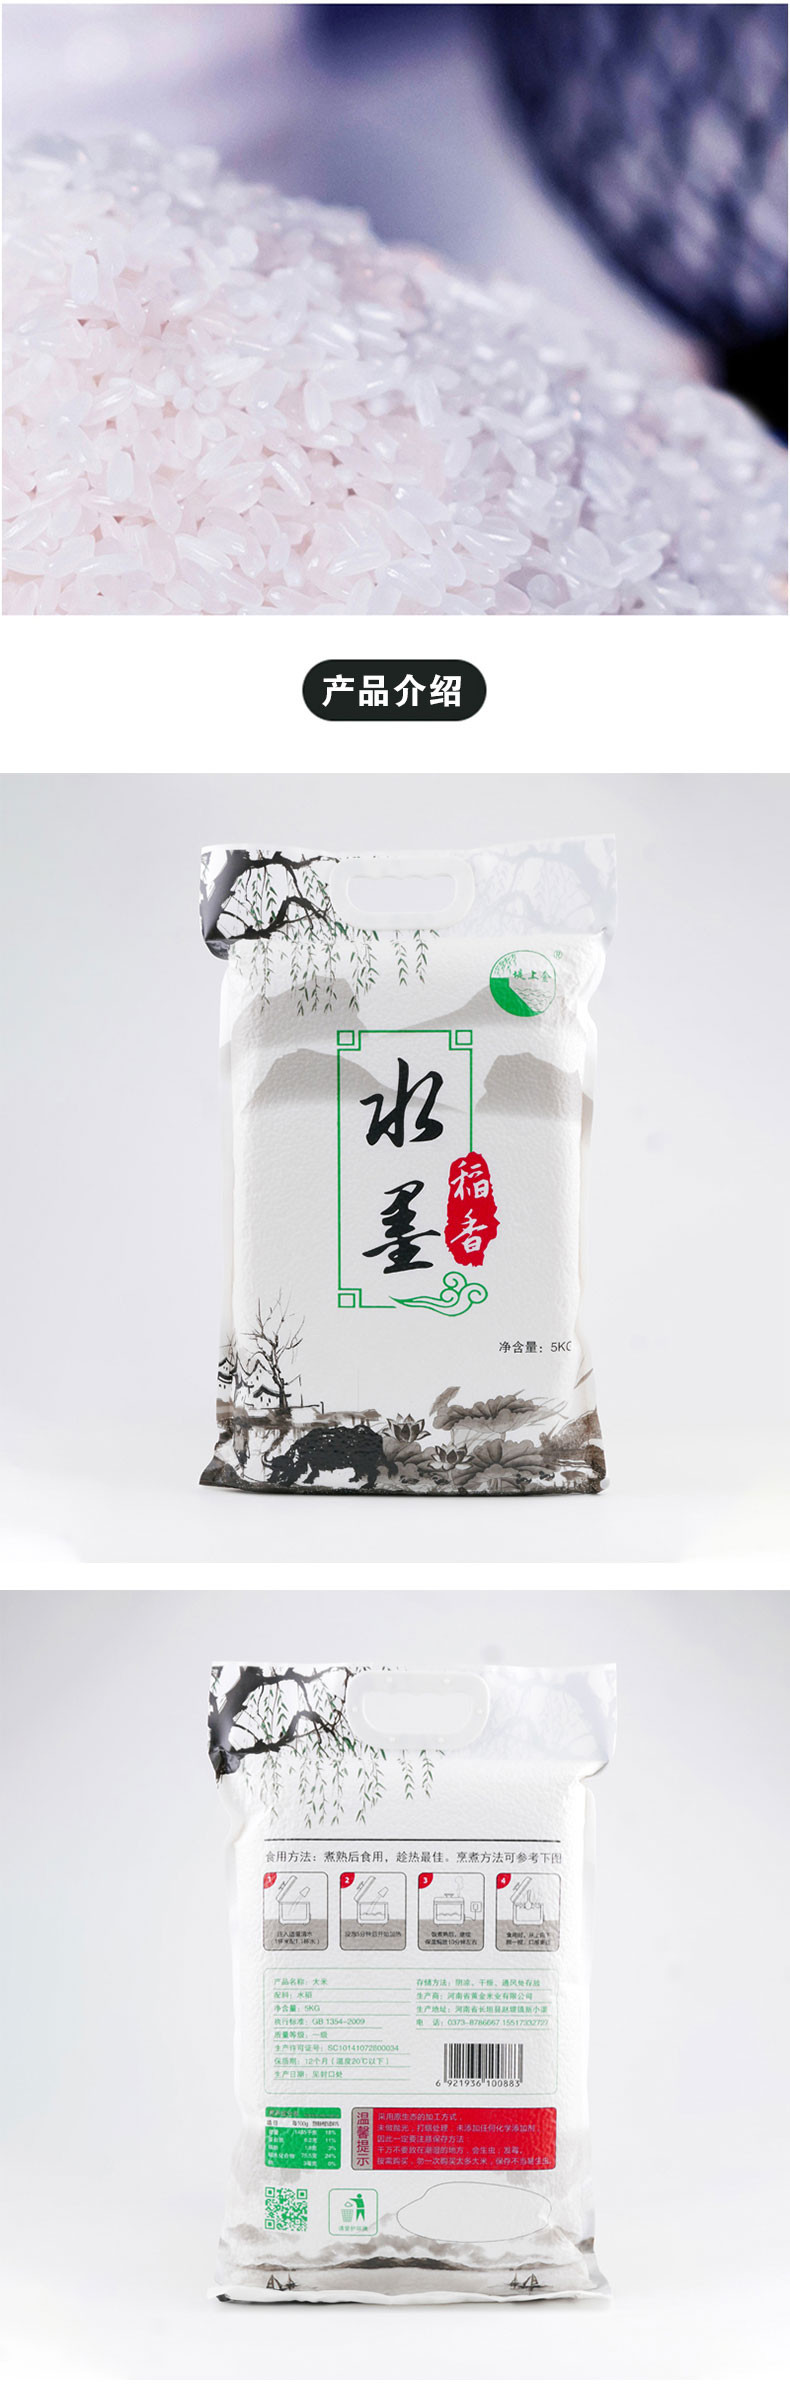 堤上金 大米5kg 水墨稻香 大米 粳米